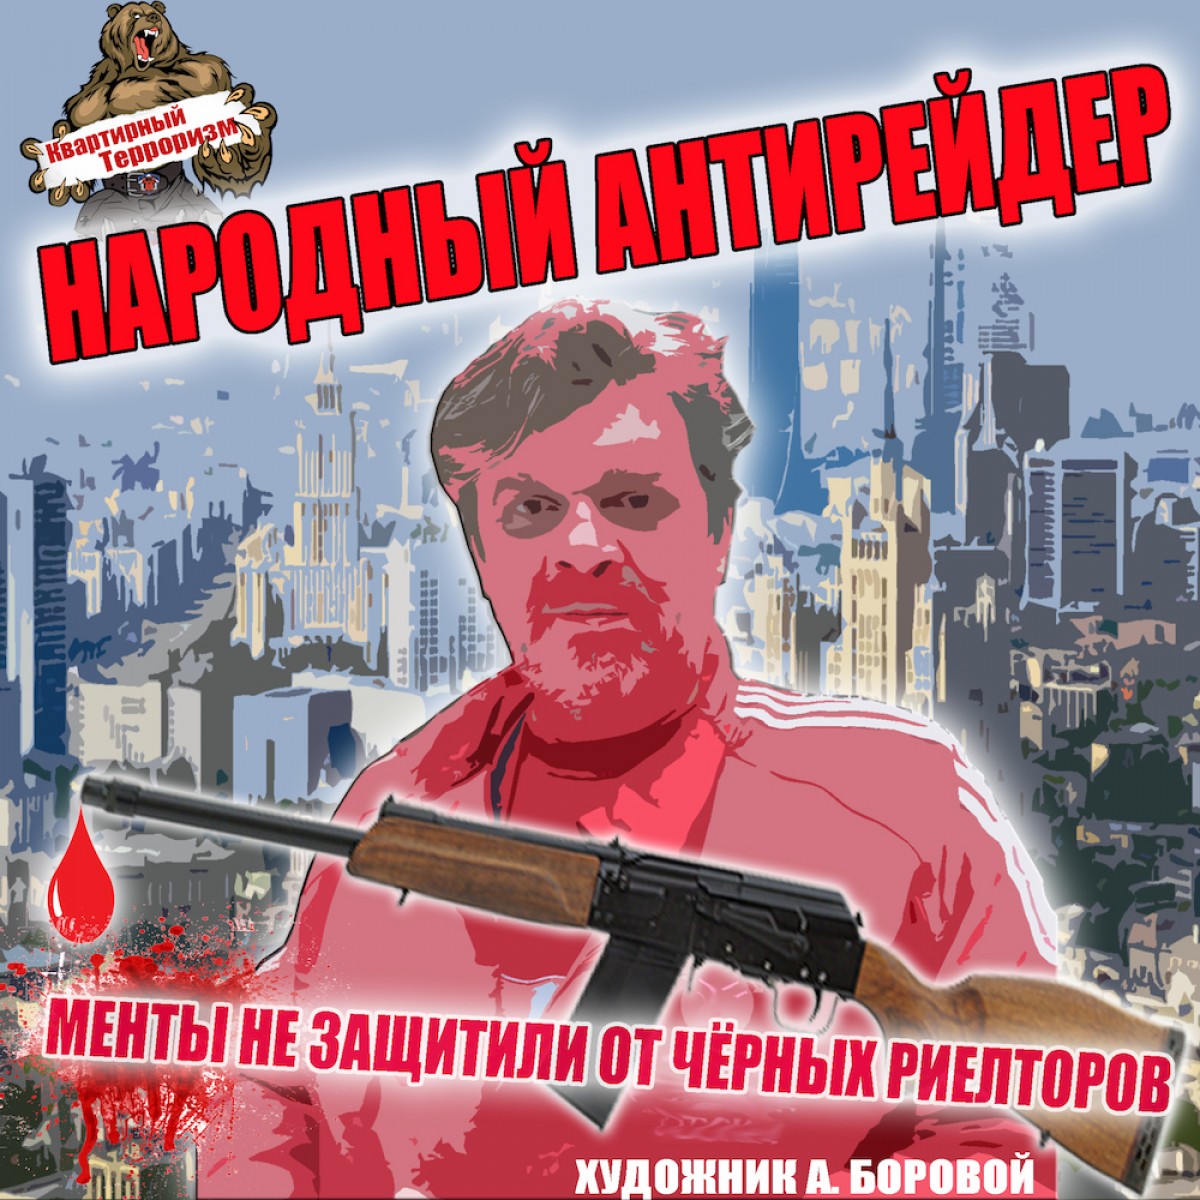 Народный антирейдер, Александр Боровой, общественный комитет по защите от квартирного рейдерства